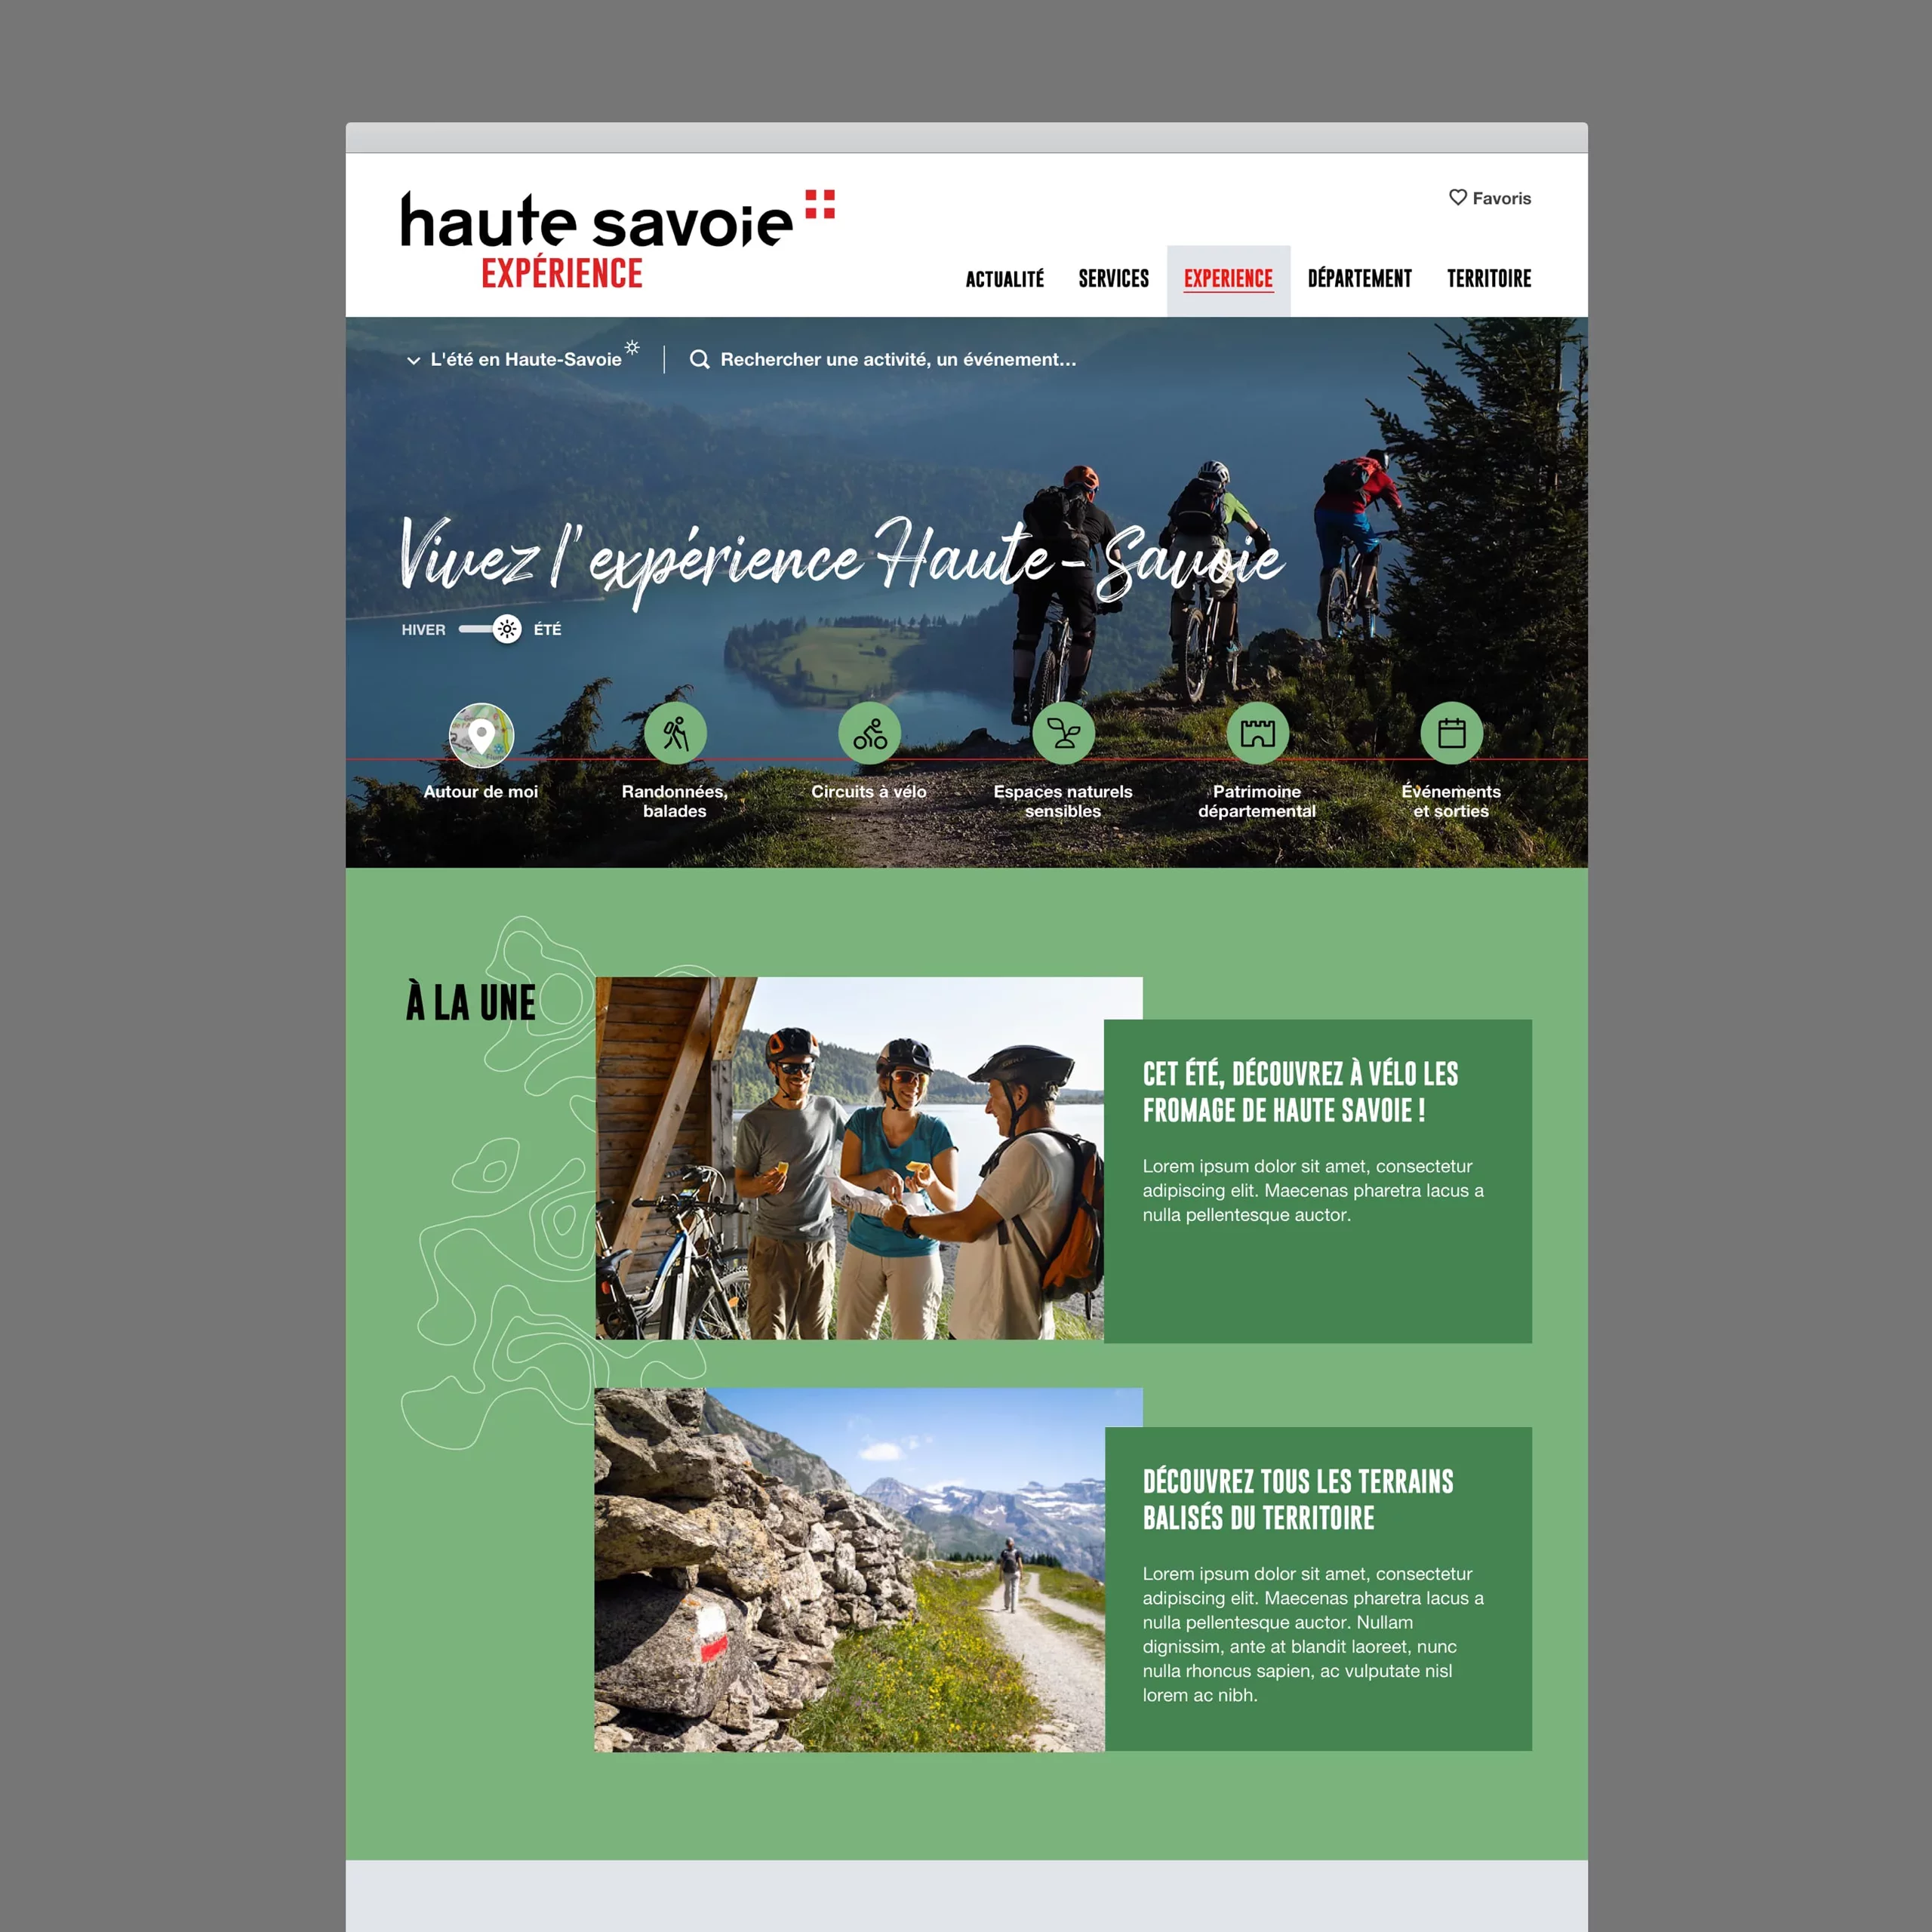 Maquette desktop de la page d'accueil, avec une grande photo de une et une navigation pictographique qui met en avant les typologies de contenu du site.